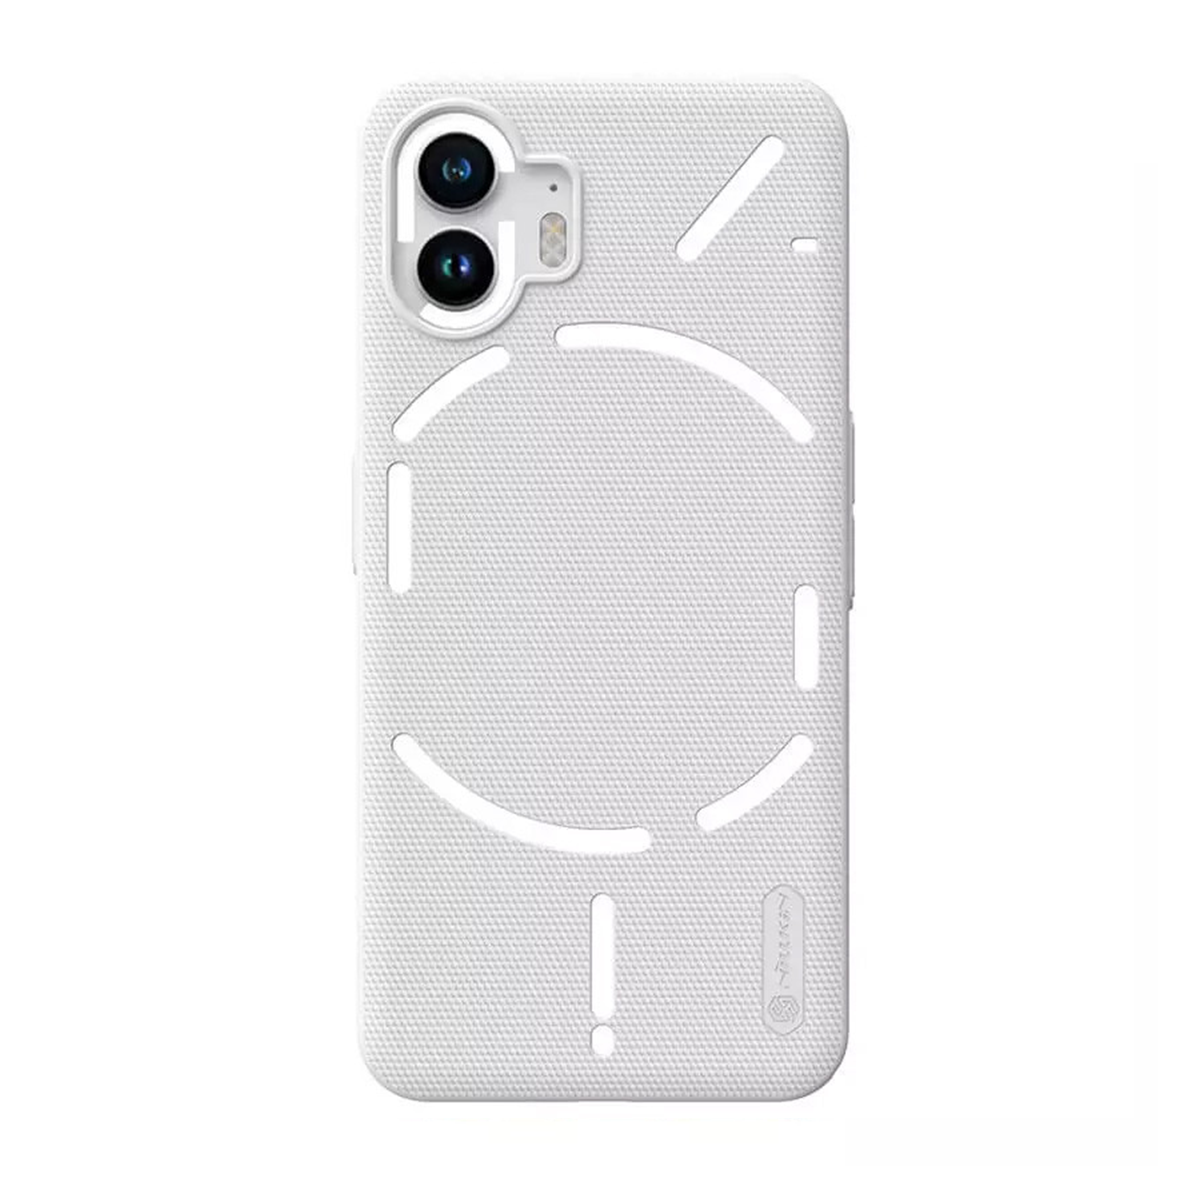 قاب گوشی ناتینگ Phone 2 نیلکین مدل Super Frosted Shield-سفید